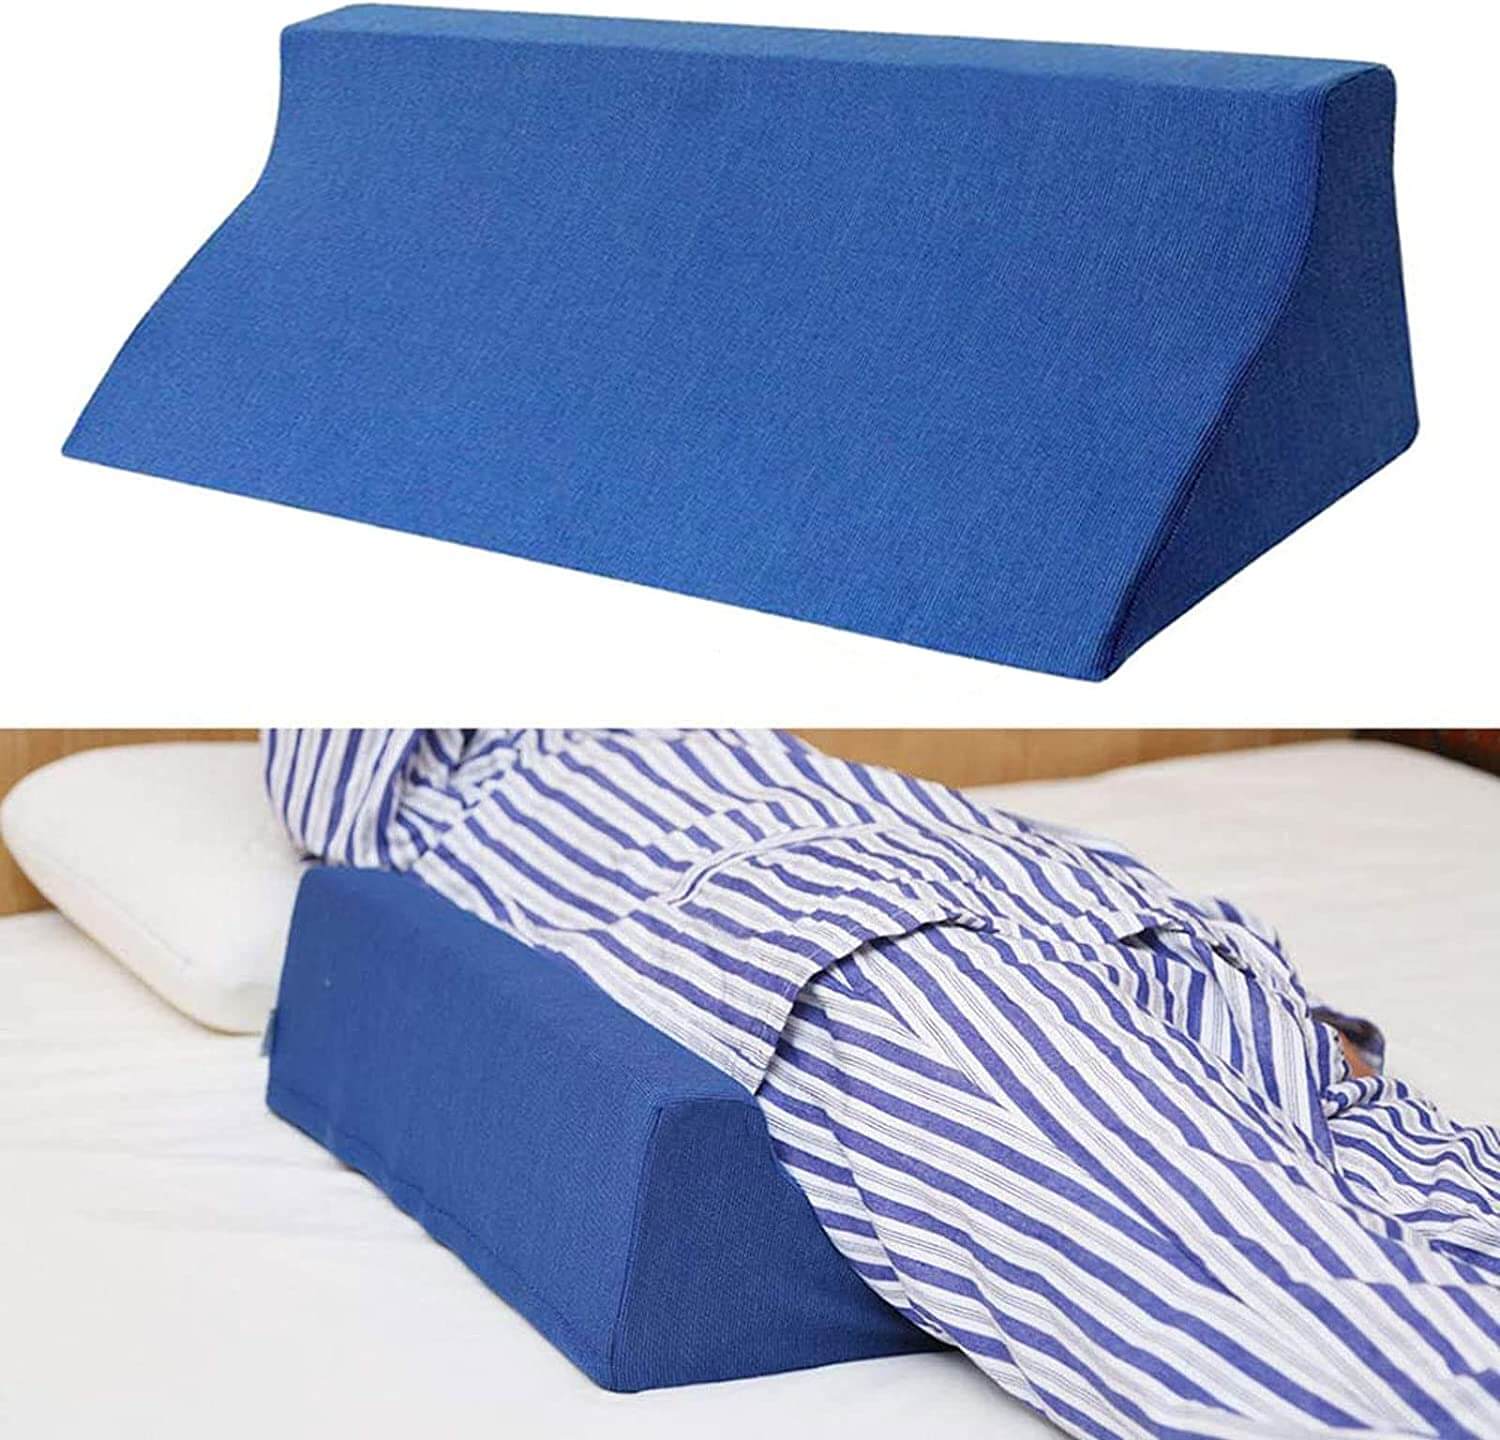 Ortho Wedge Cushion Blue 